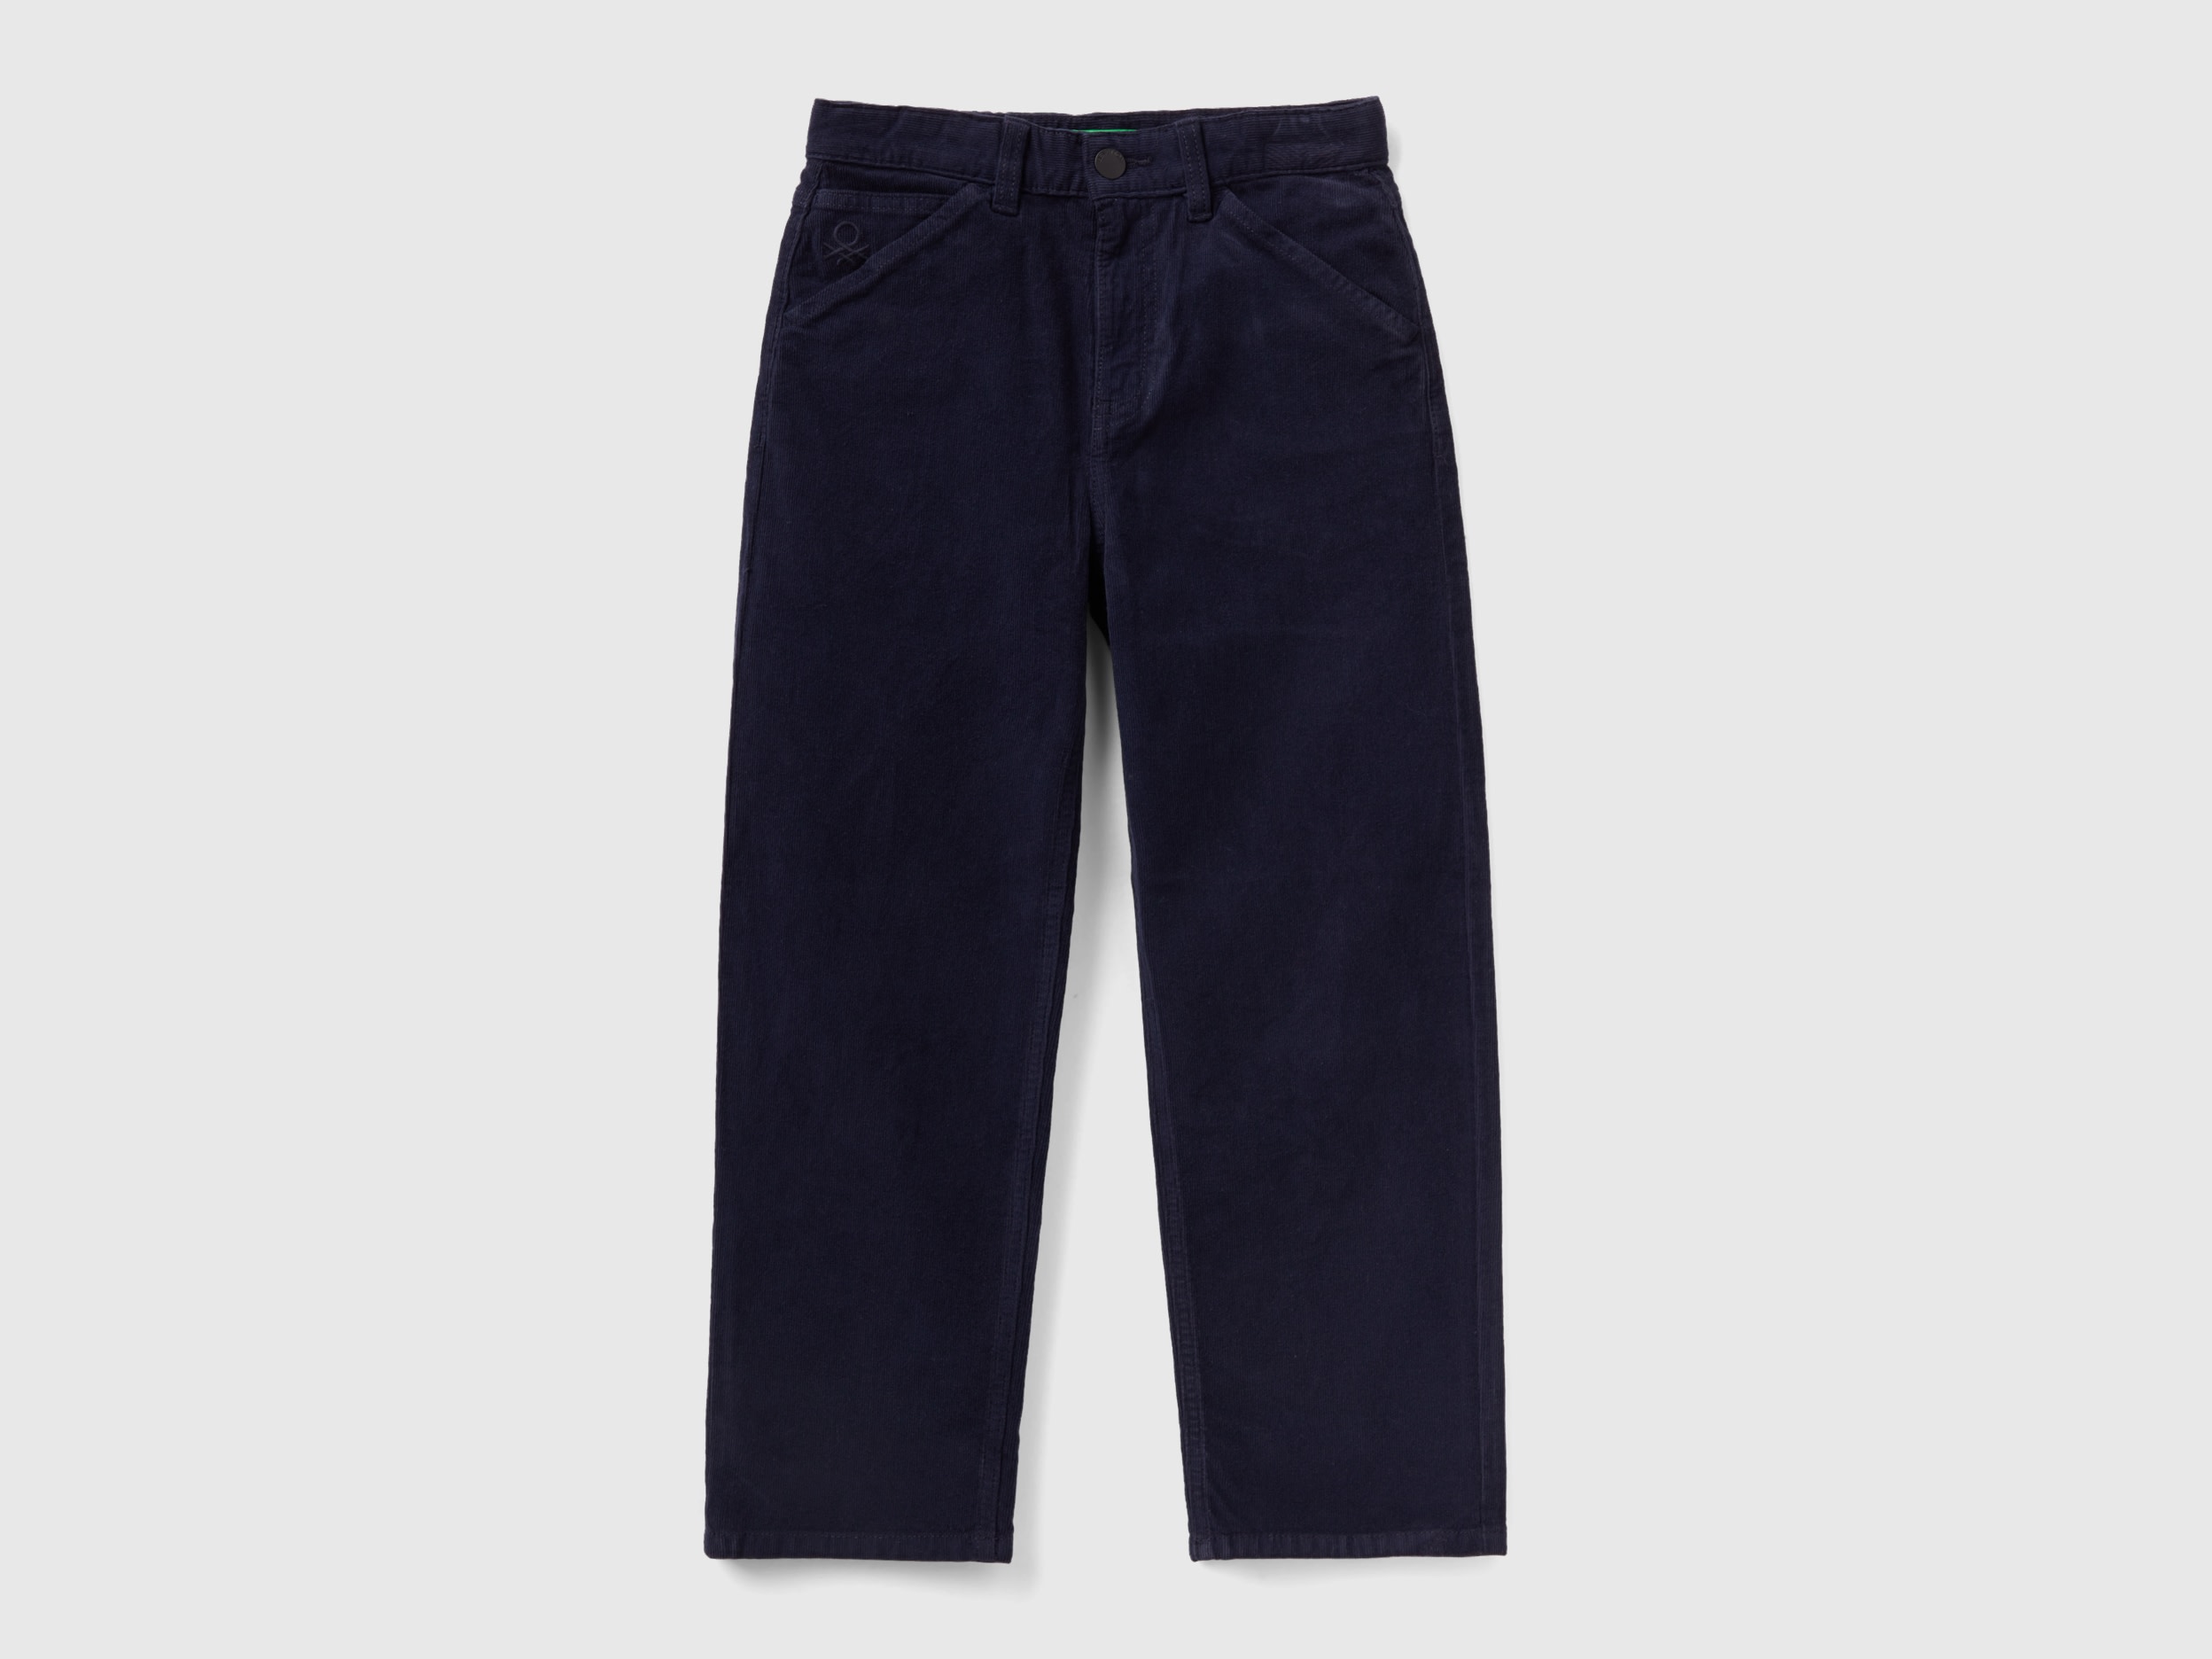 Benetton, Worker-style Velvet Trousers, size M, Dark Blue, Kids